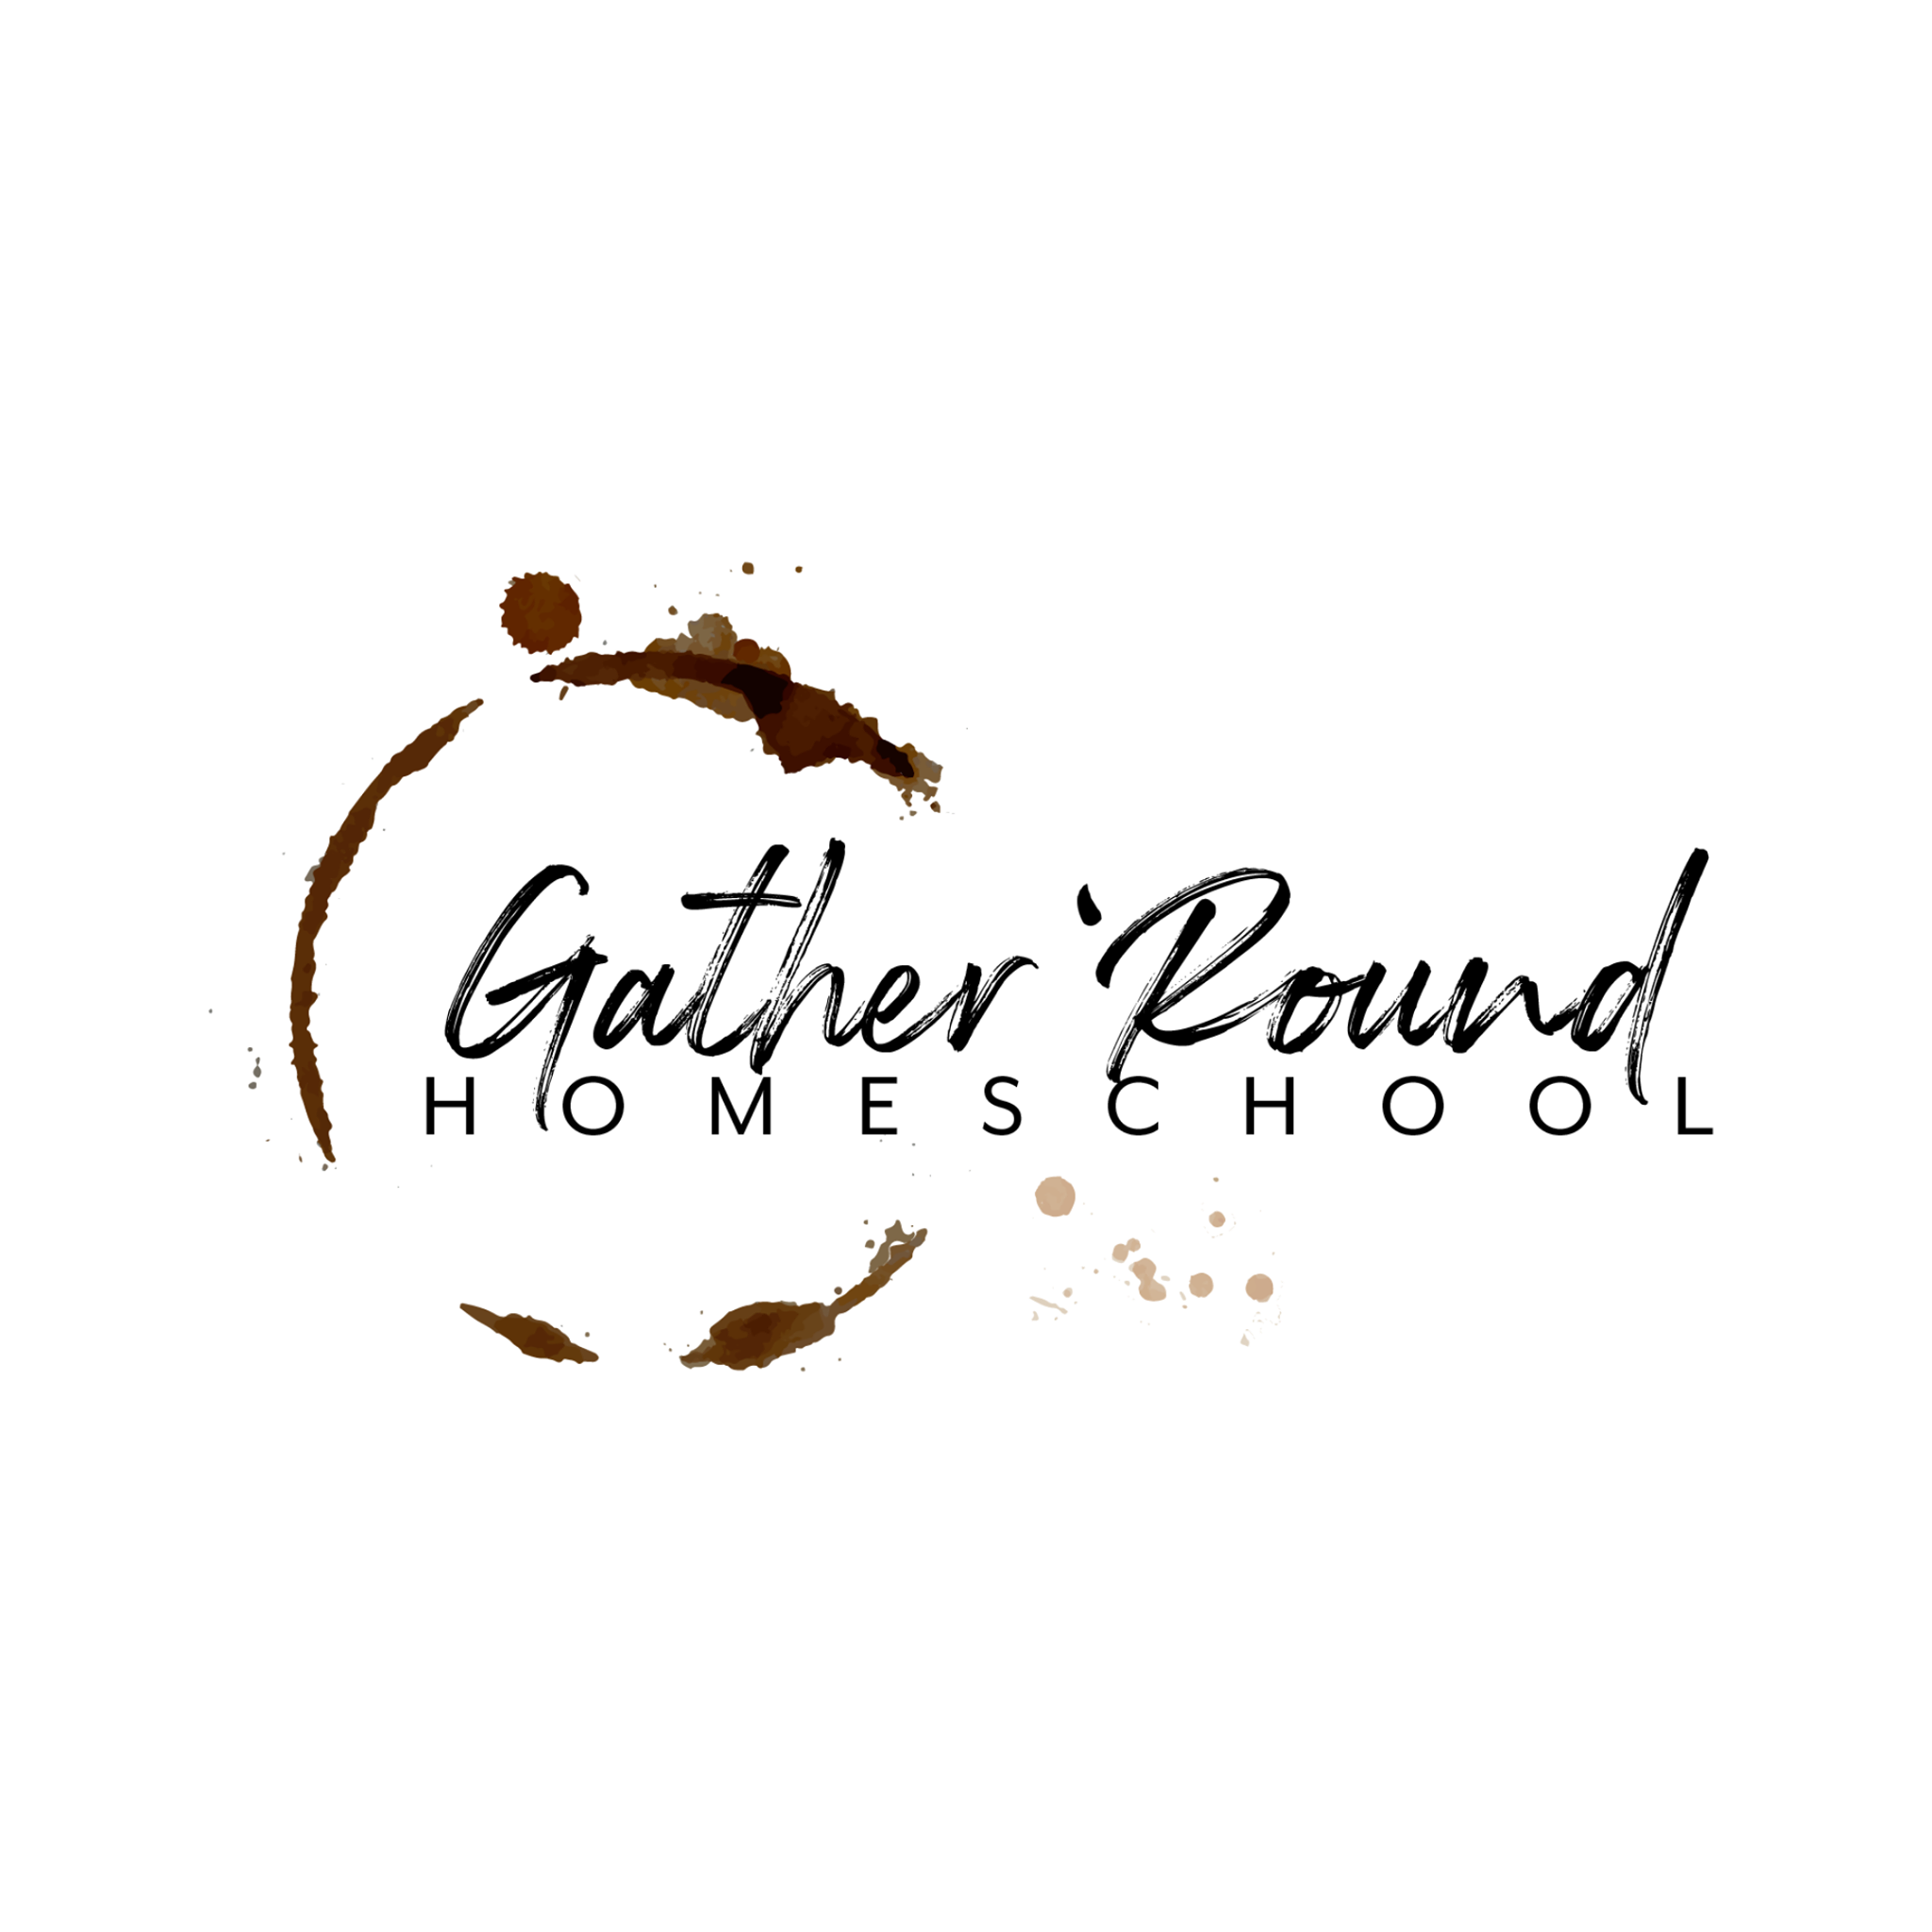 gather 'round homeschool logo vendor23